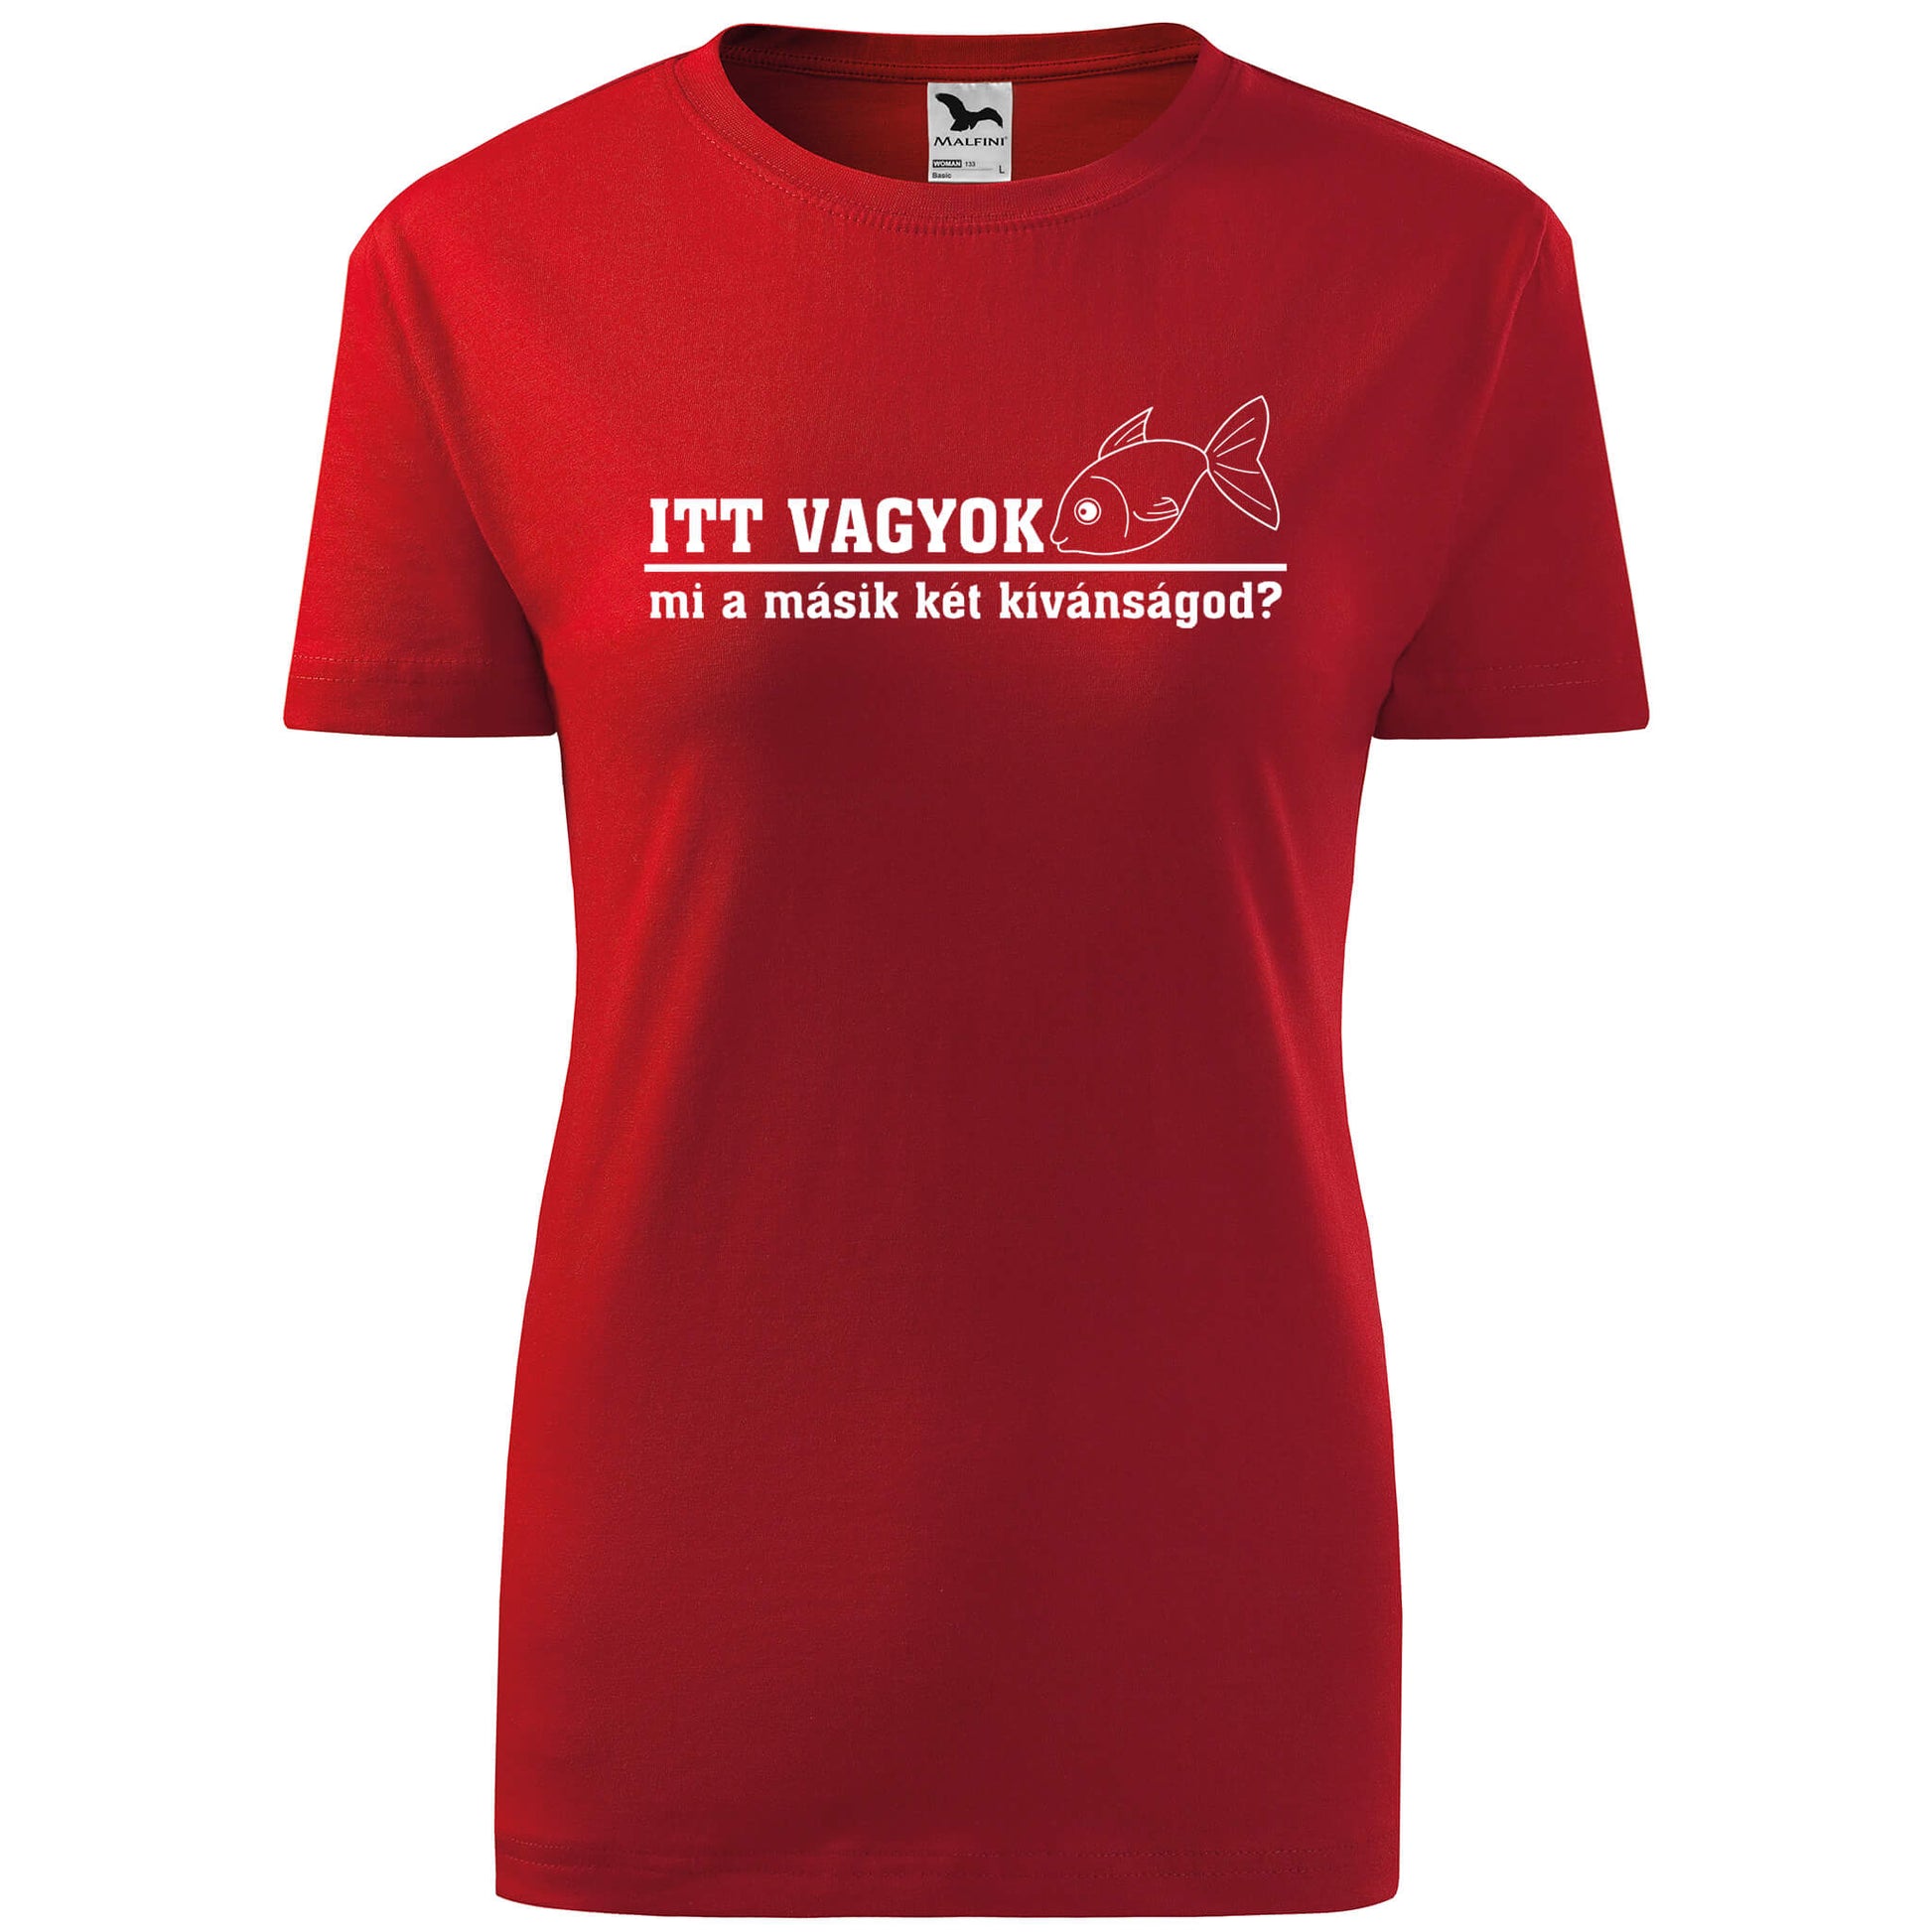 T-shirt - Itt vagyok, mi a másik két kívánságod? - rvdesignprint